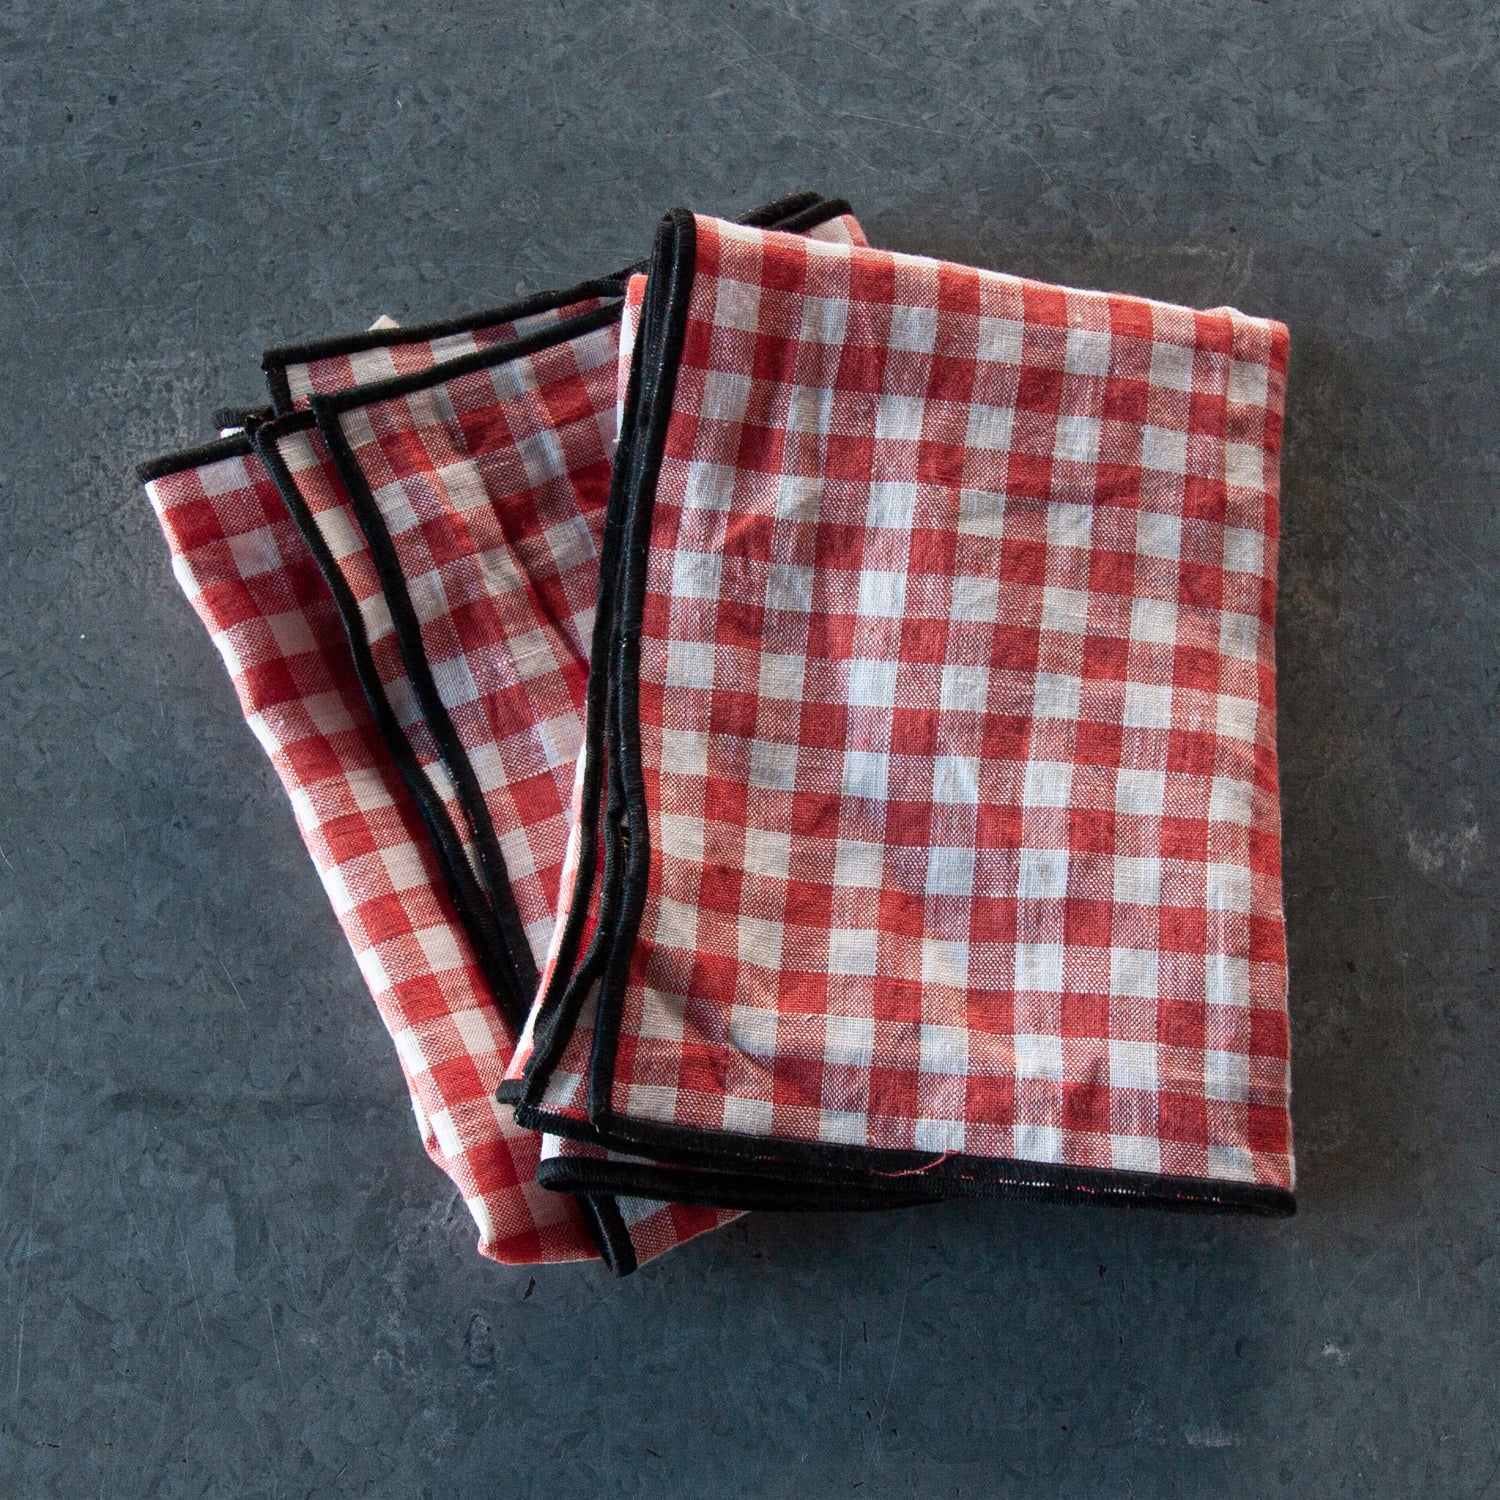 Detalle Pañitos de cocina Vichy rojo y blanco de lino de 19gr/m2